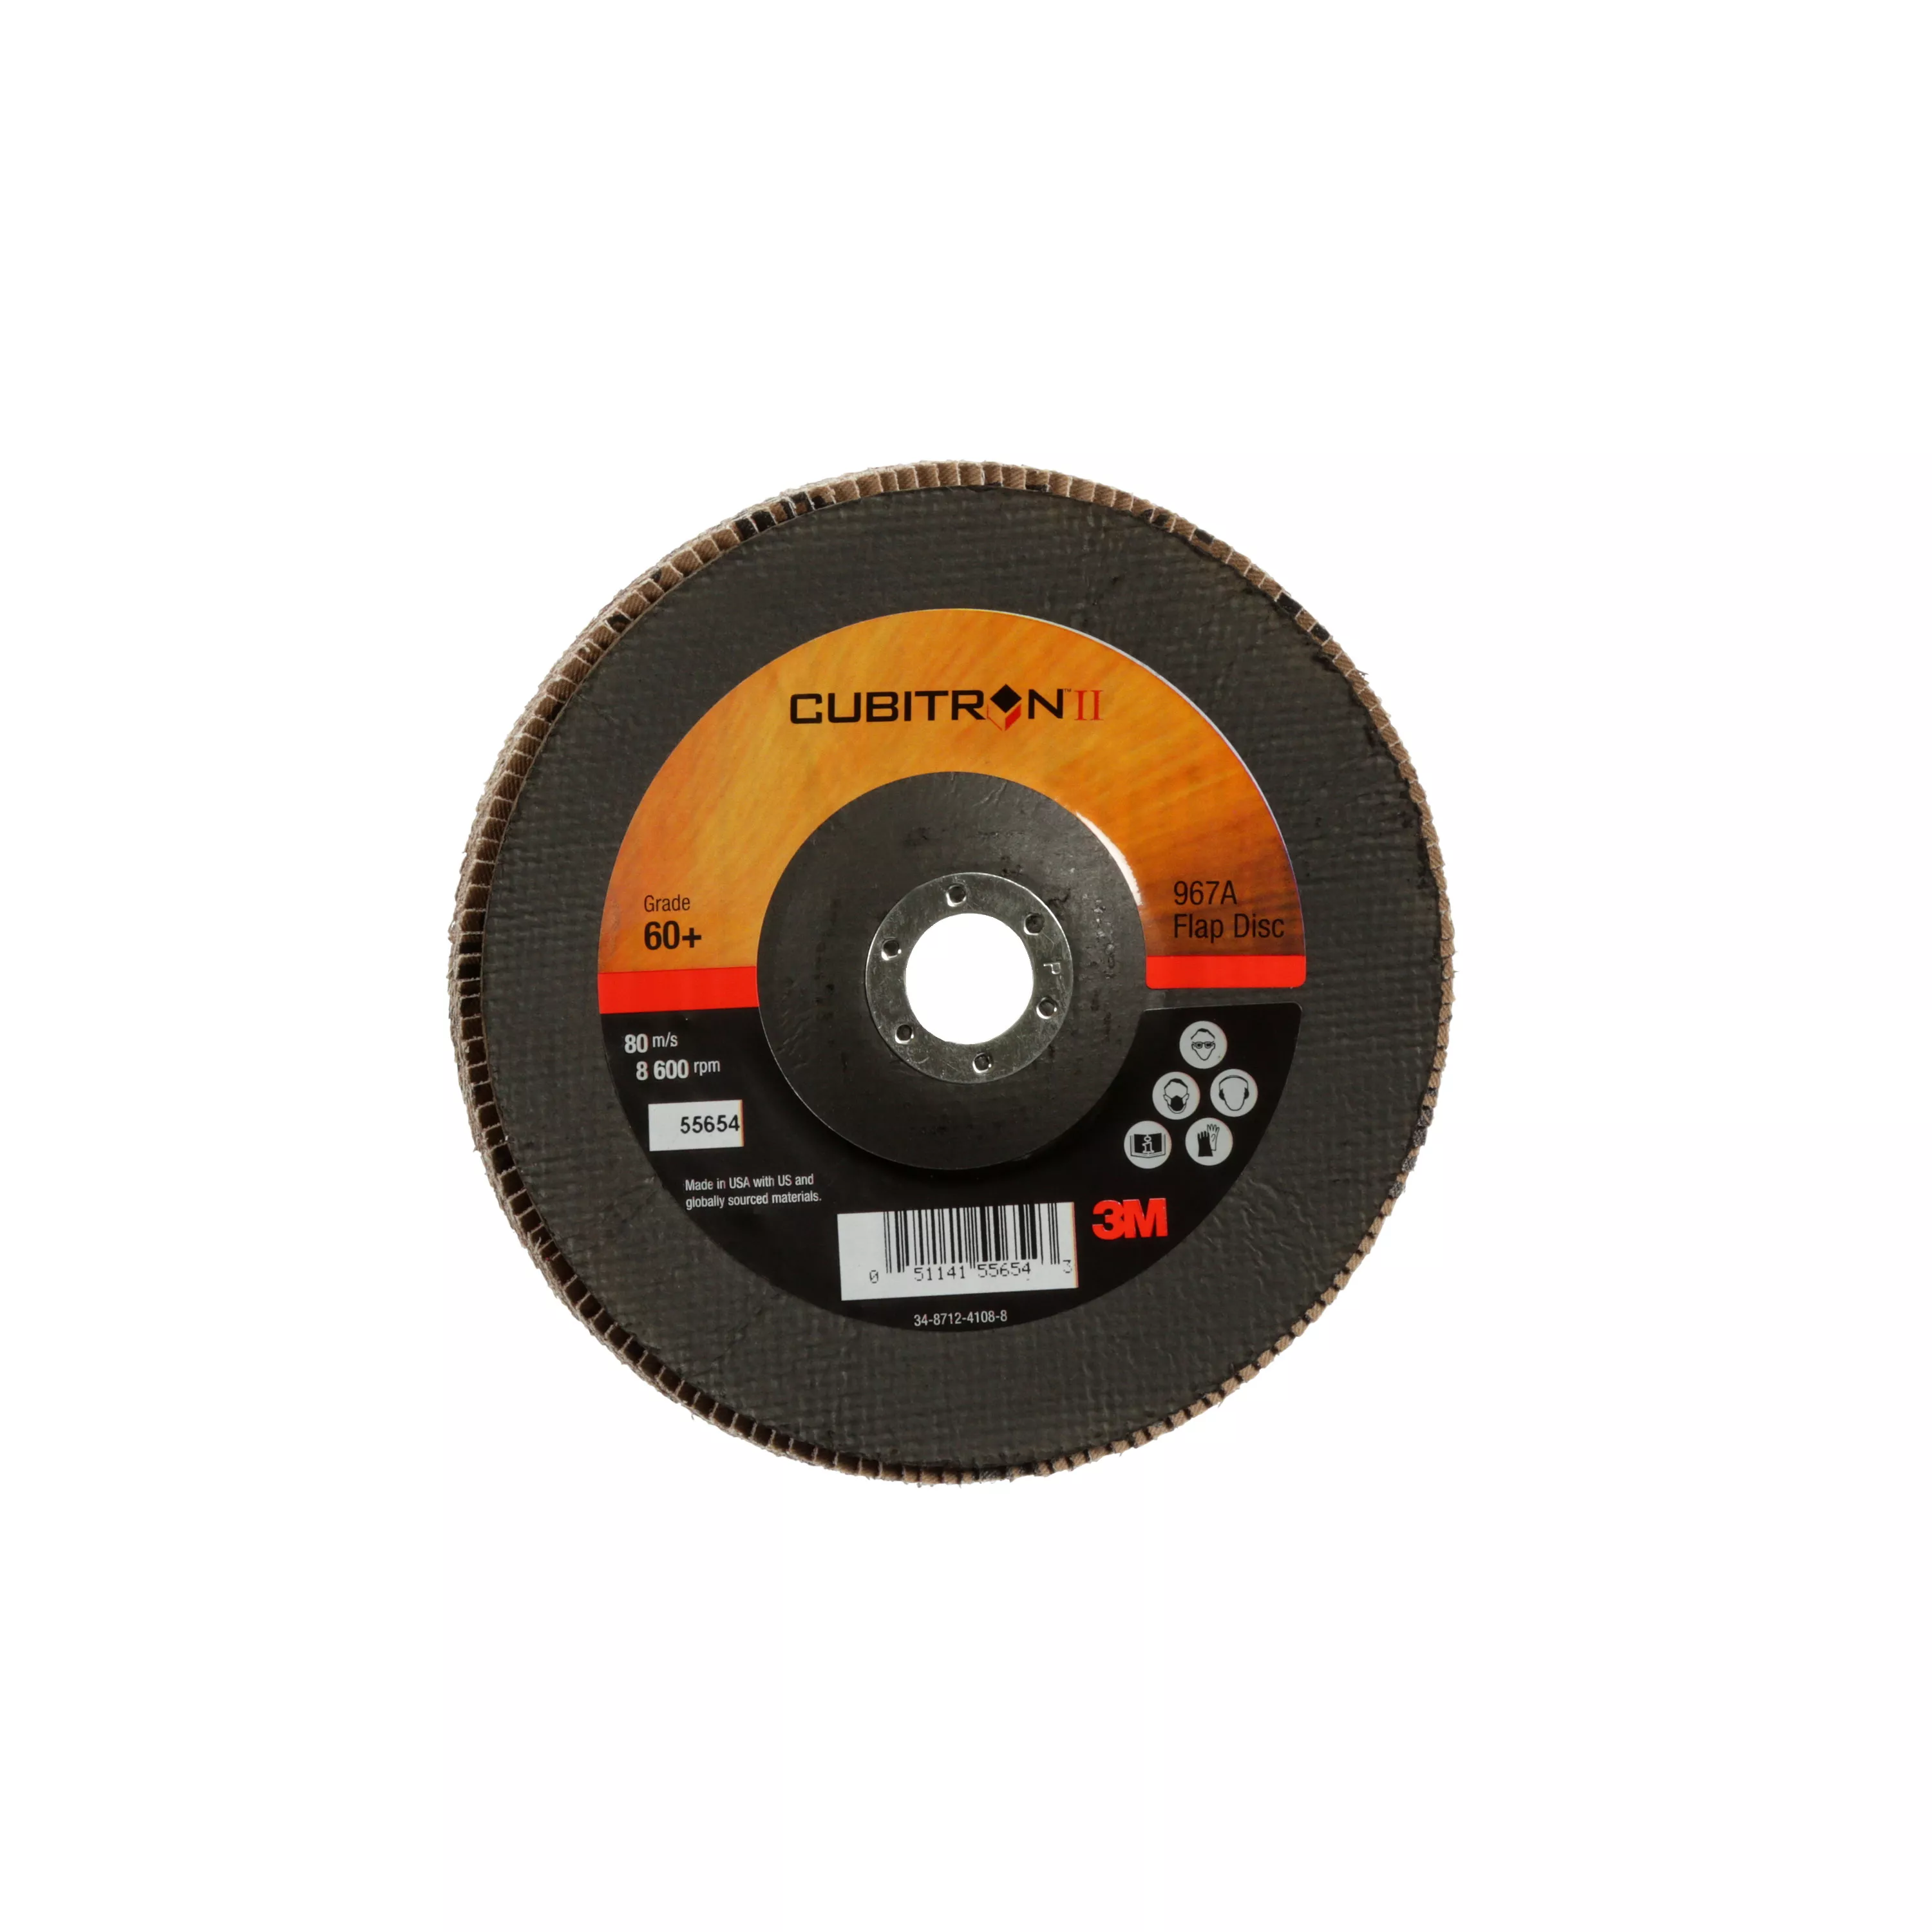 3M™ Cubitron™ II Flap Disc 967A, 60+, T29, 7 in x 7/8 in, Giant, 5
ea/Case